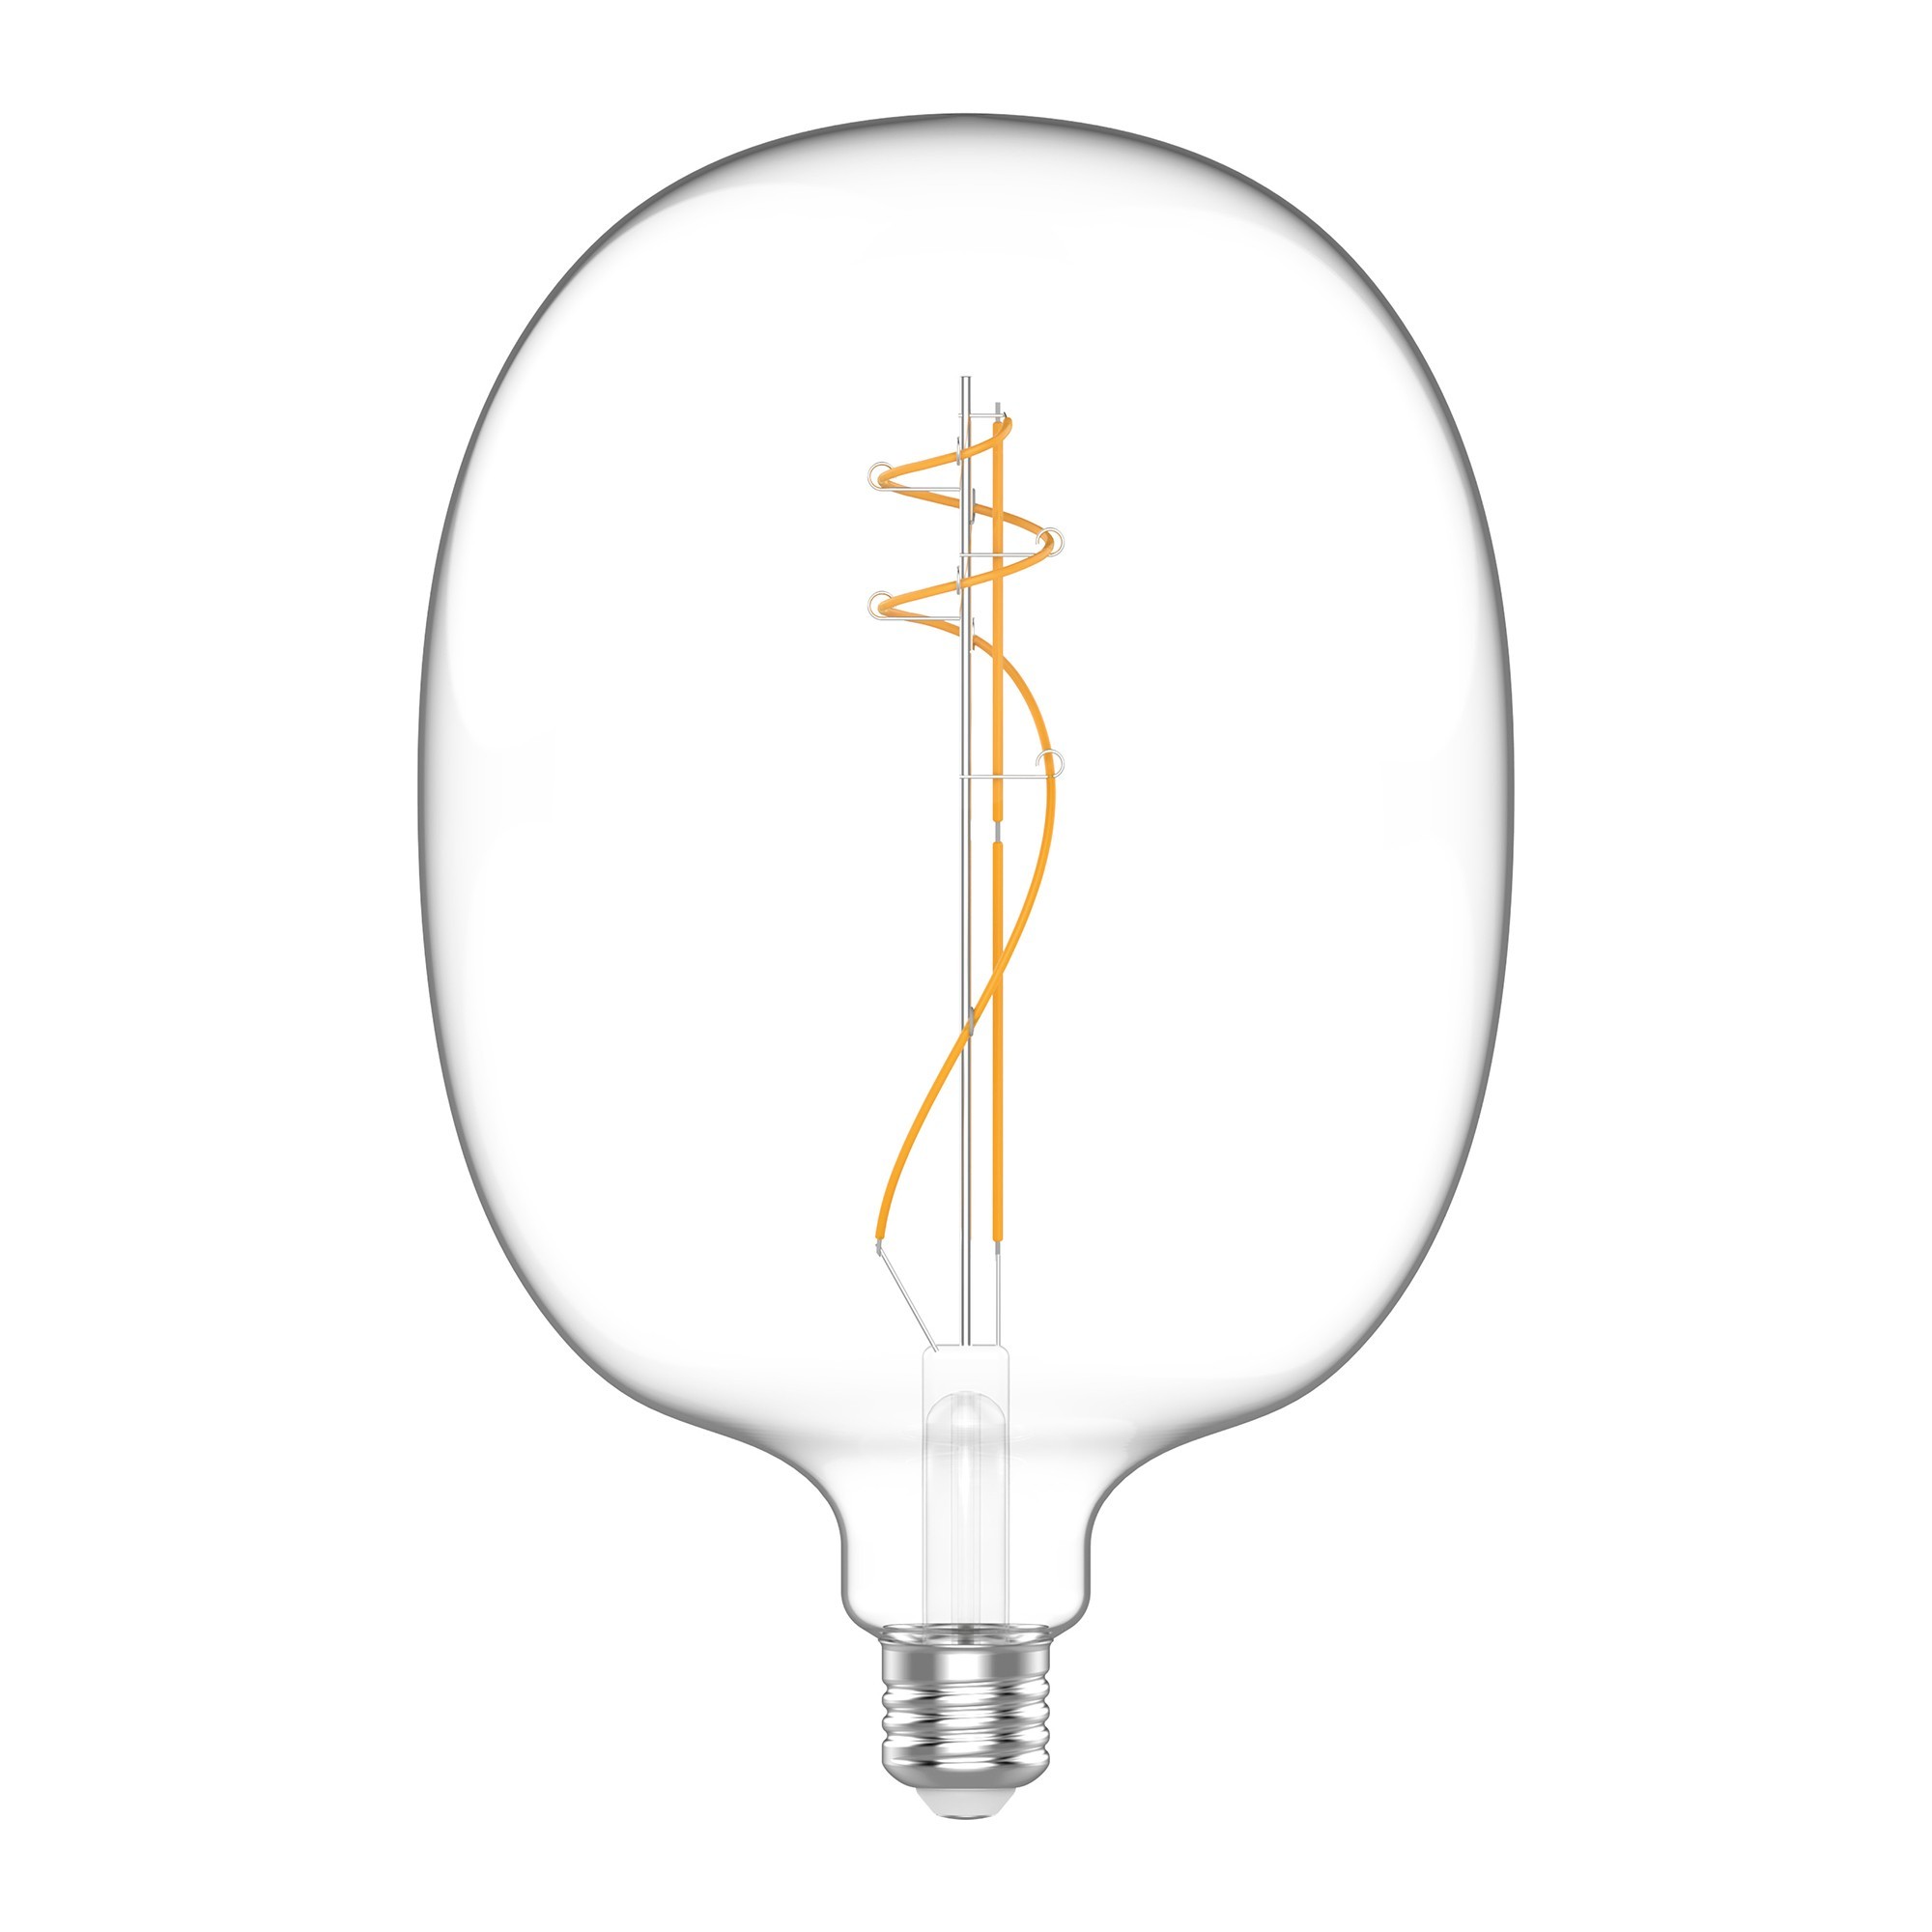 H01 - LED Light Bulb Oval shaped, E27, 10W, 2700K, 1100Lm, clear glass